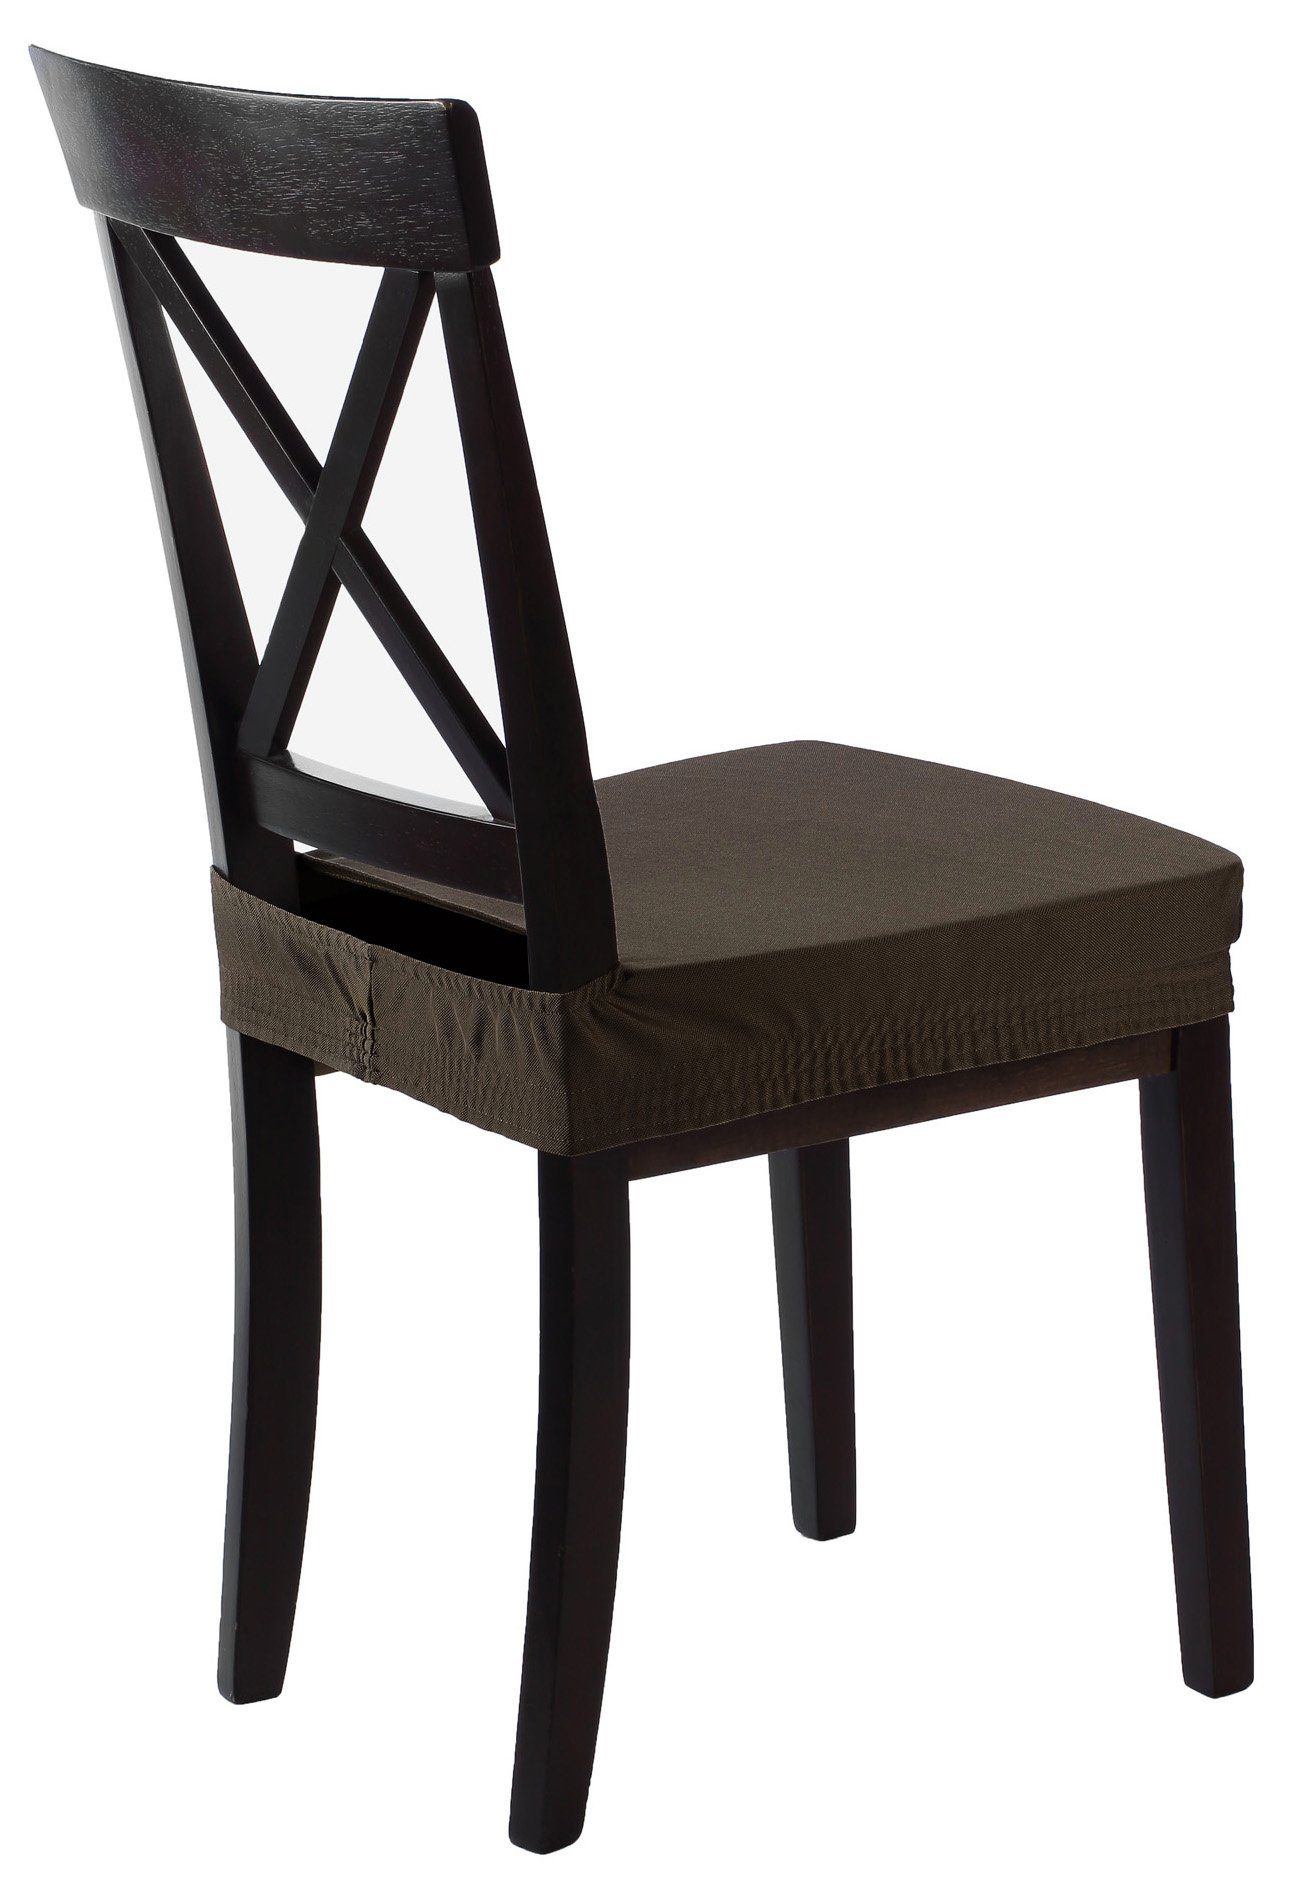 Effekt, Sitzbezug SCHEFFLER-HOME Lotus Marie HOMESTYLE Stuhlbezug mit elastisch LIVE sh Braun und Fleckenschutz